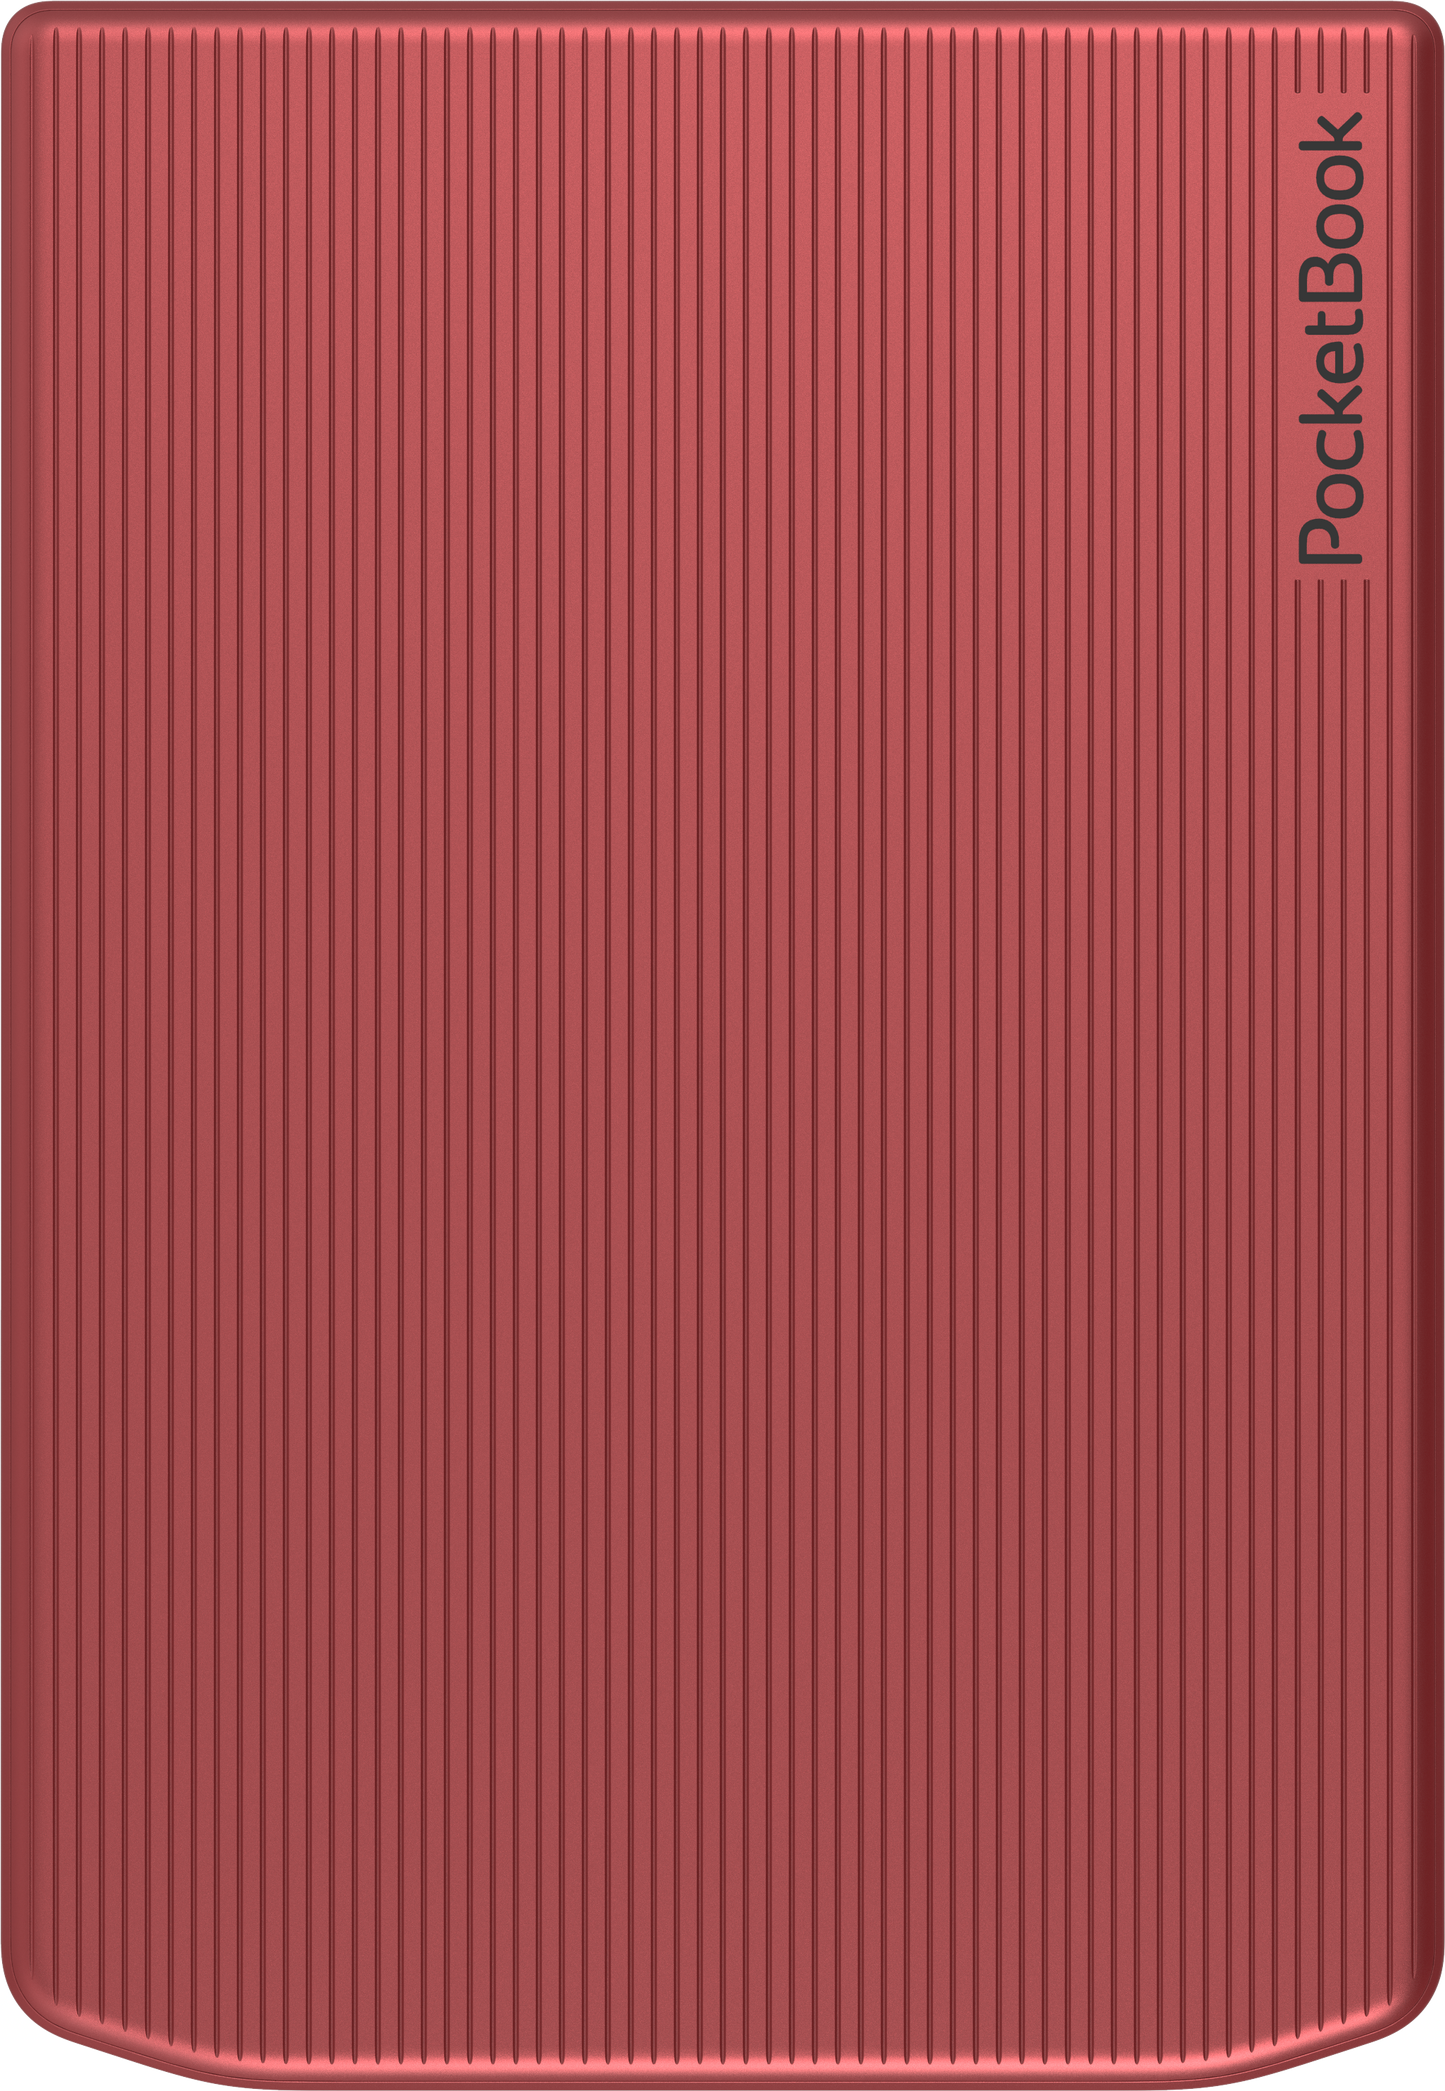 Pocketbook Verse Pro e-reader